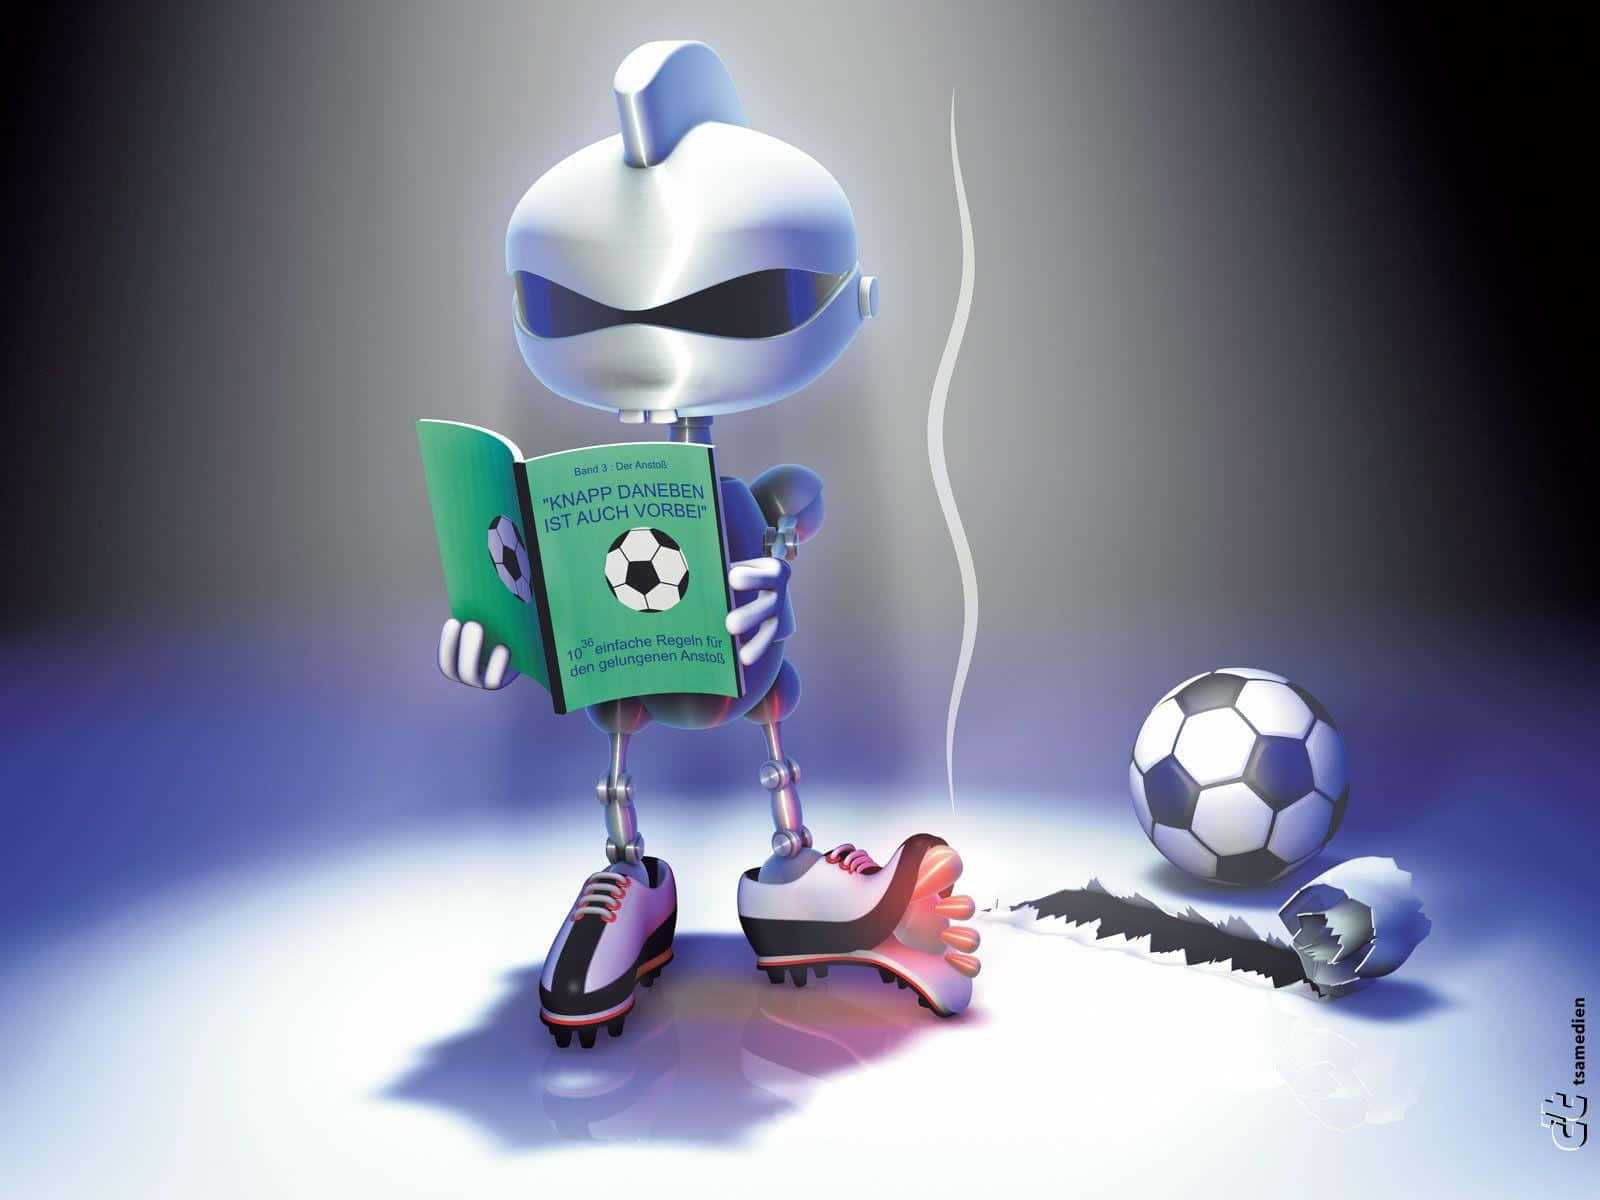 Unrobot Tiene In Mano Un Libro E Un Pallone Da Calcio.